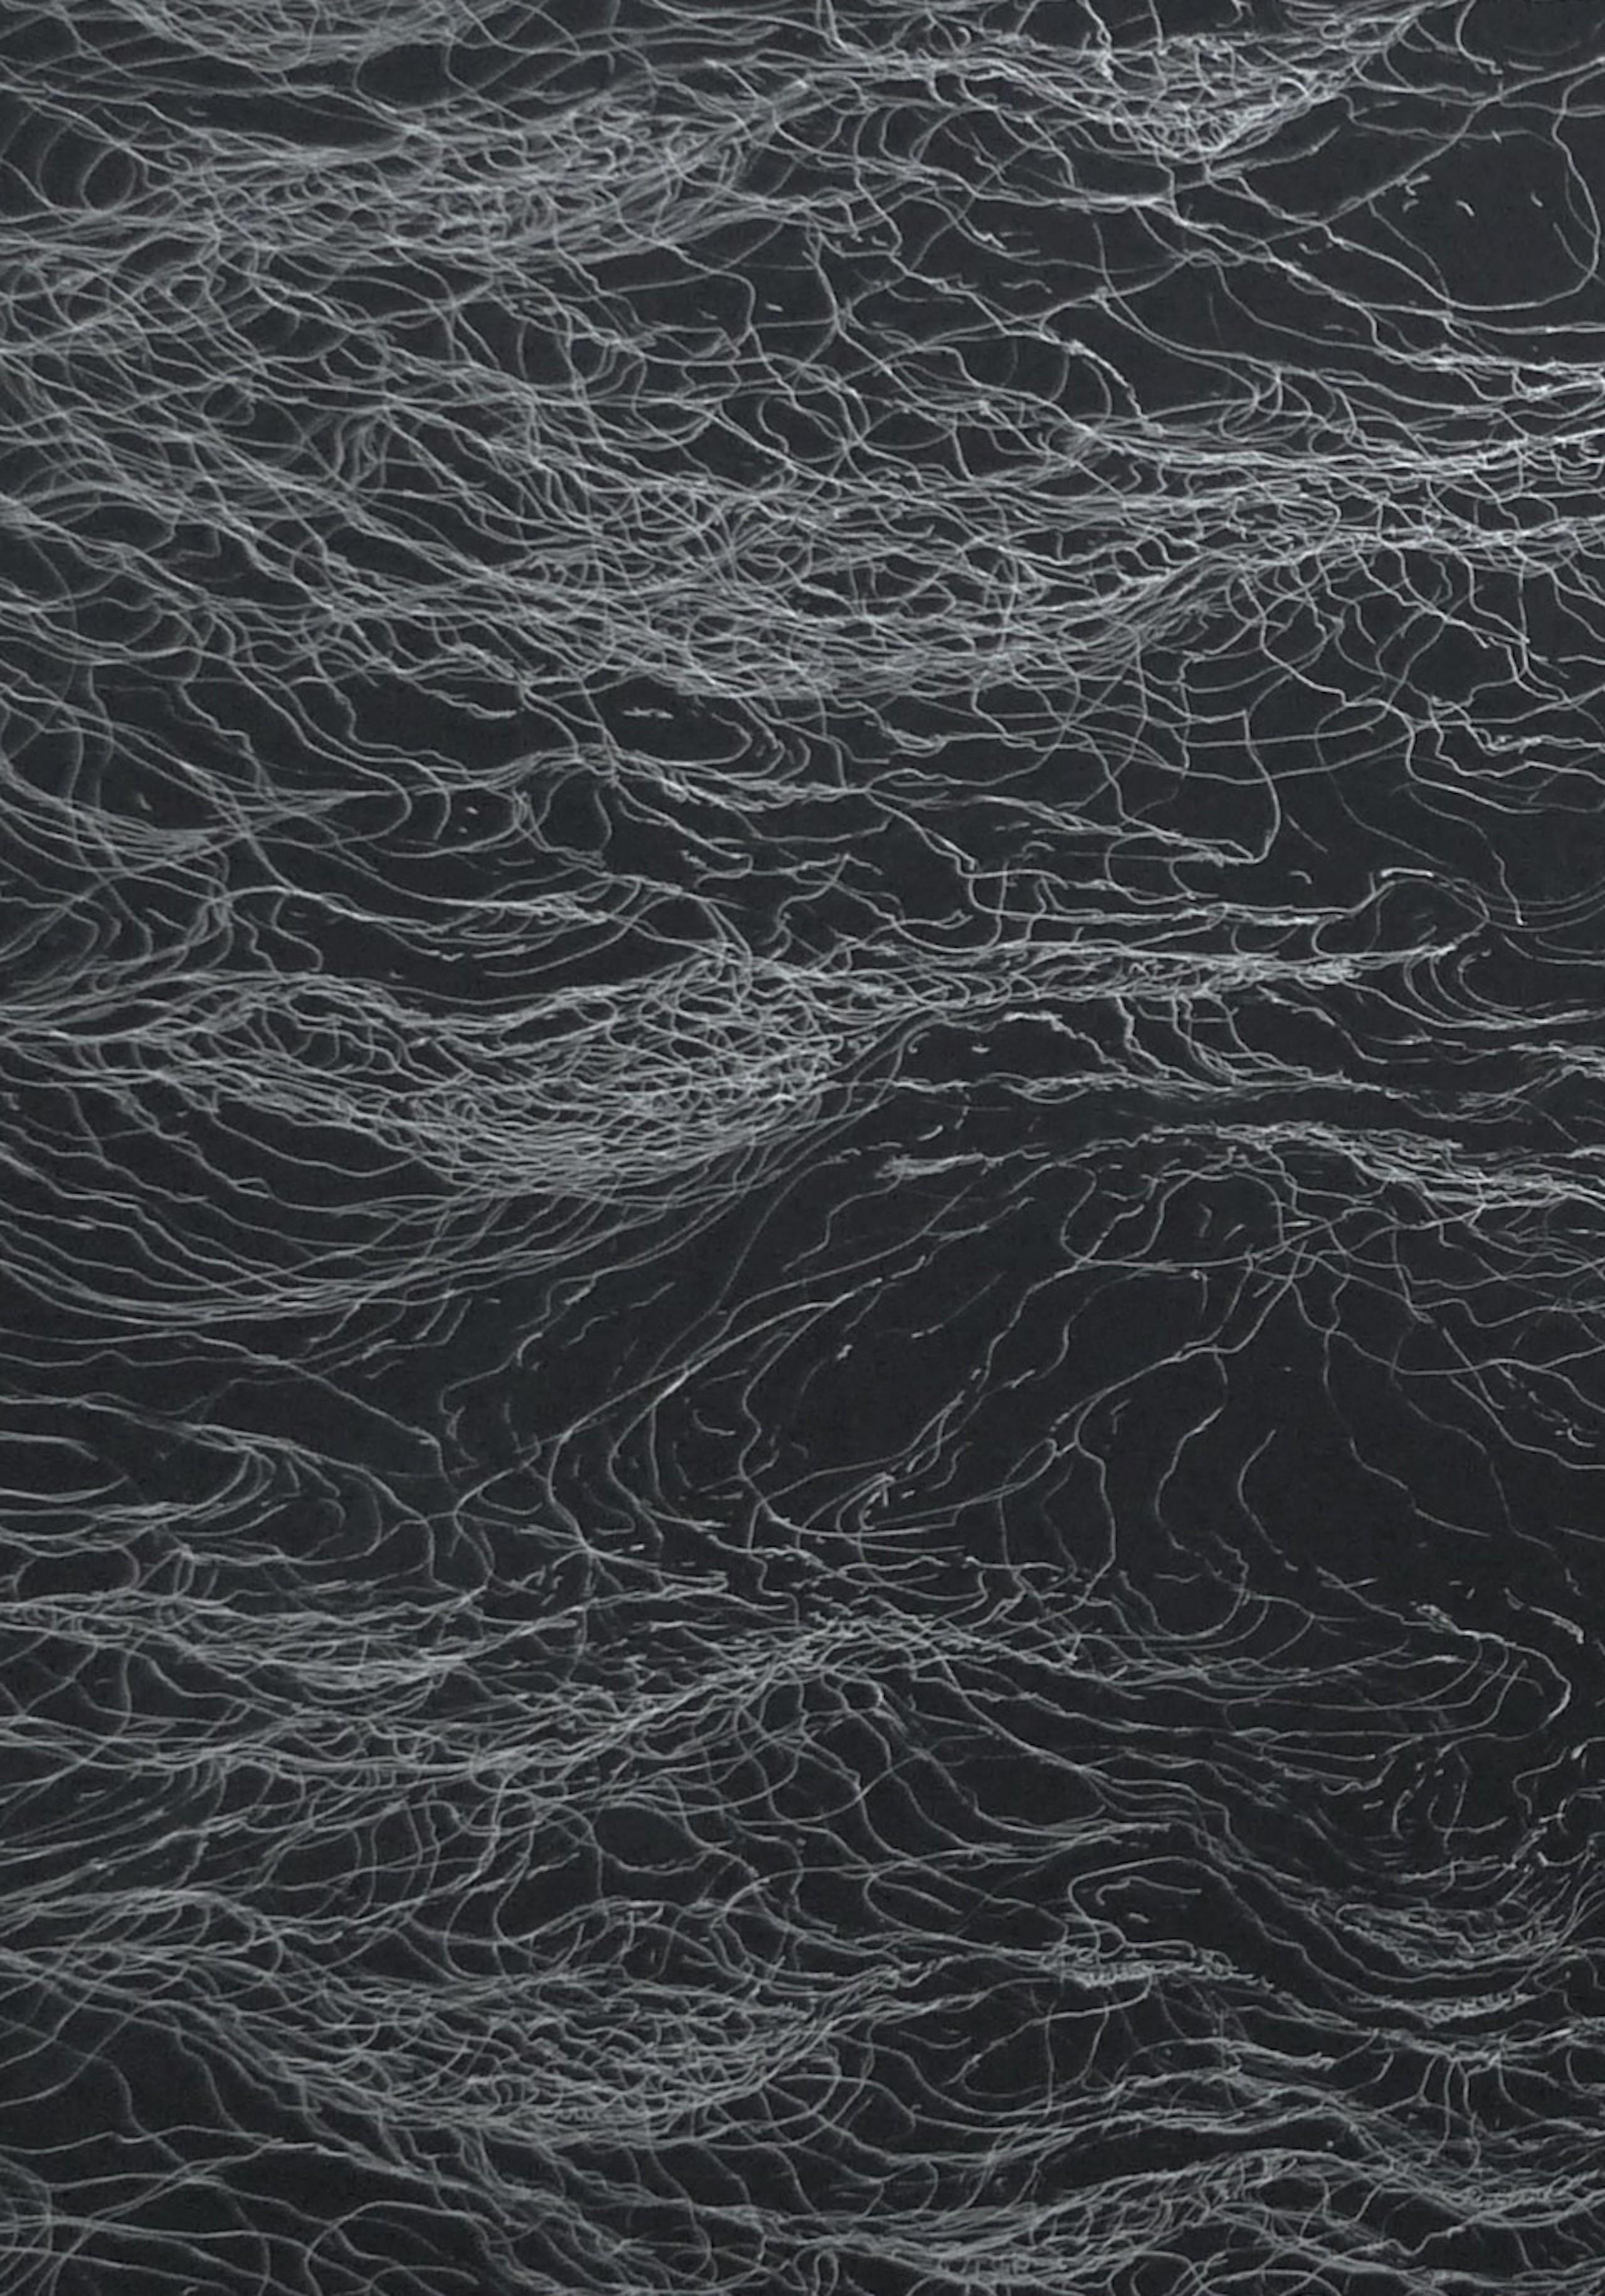 Infinity by Franco Salas Borquez - Seascape, ocean, waves, black, silver ink 4